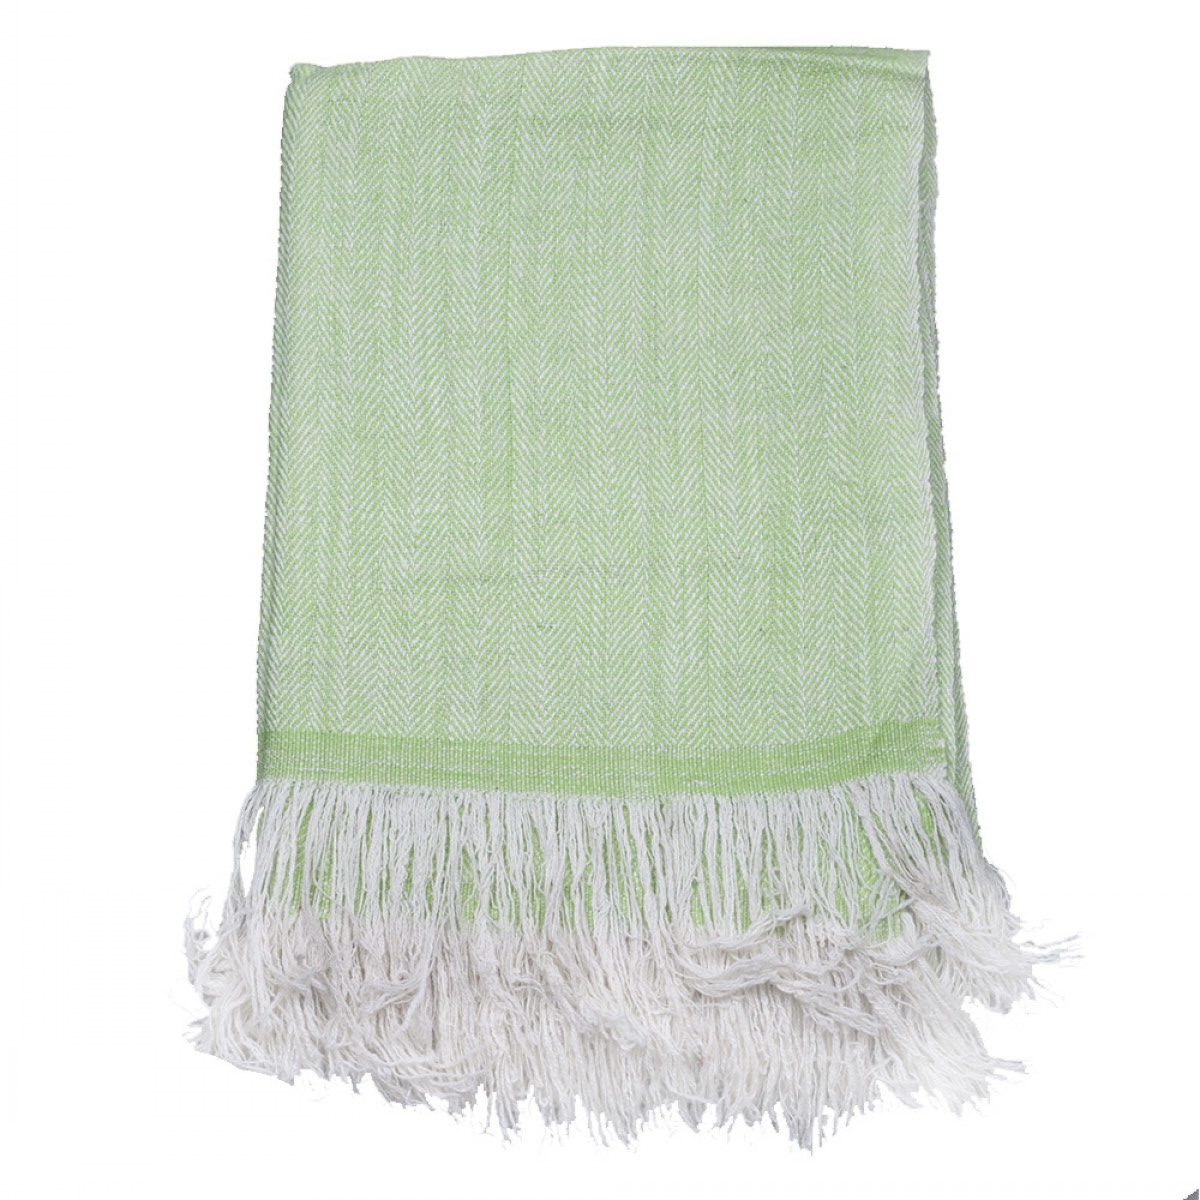 Apple Green Herringbone Cashmere Blanket  (Made to Order)